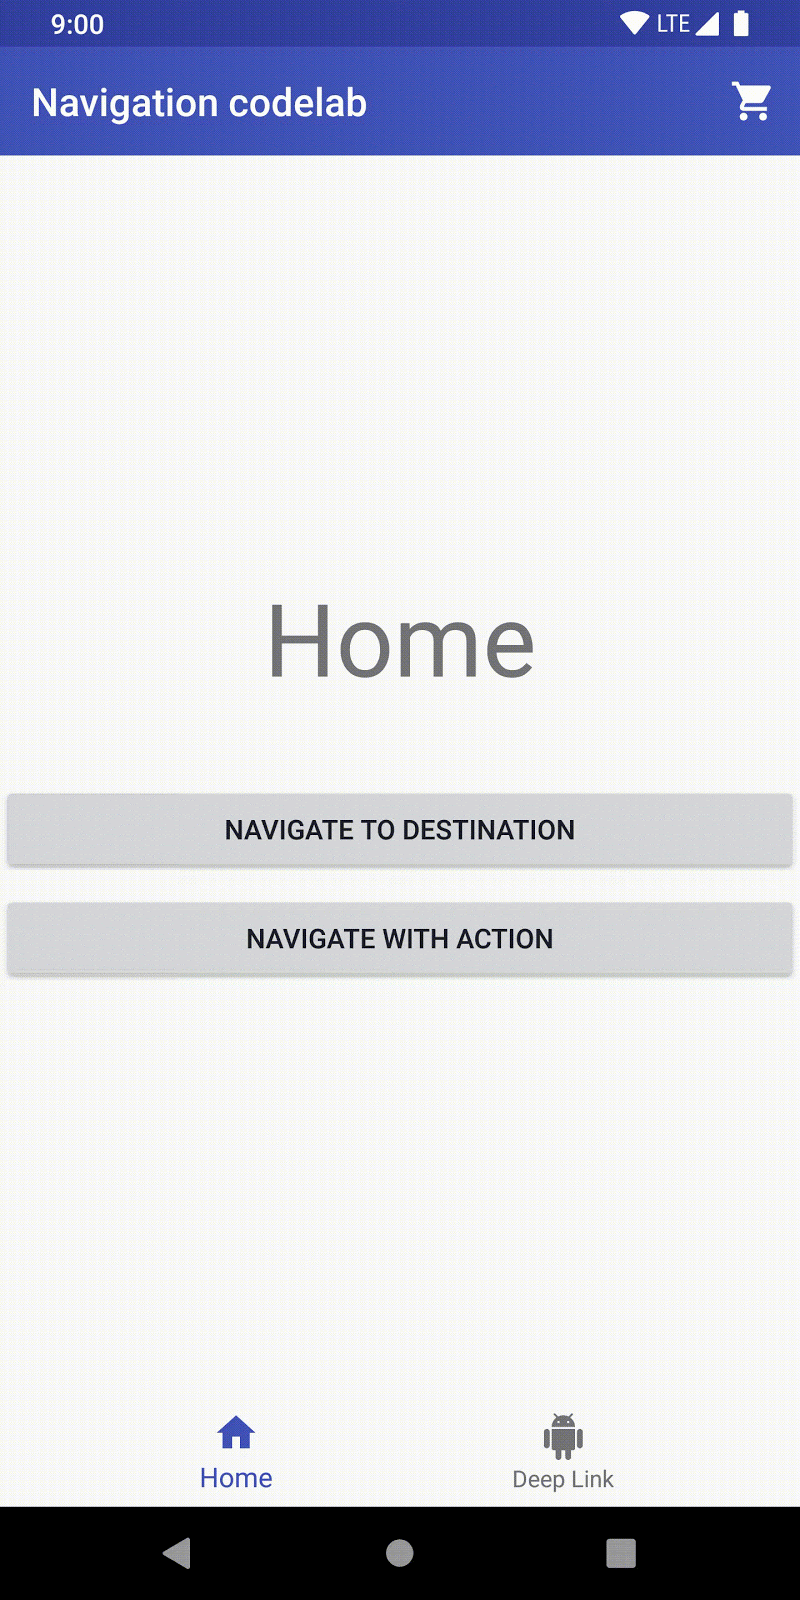 Dari Beranda, pengguna mengklik Navigate to destination dan menuju ke langkah pertama.